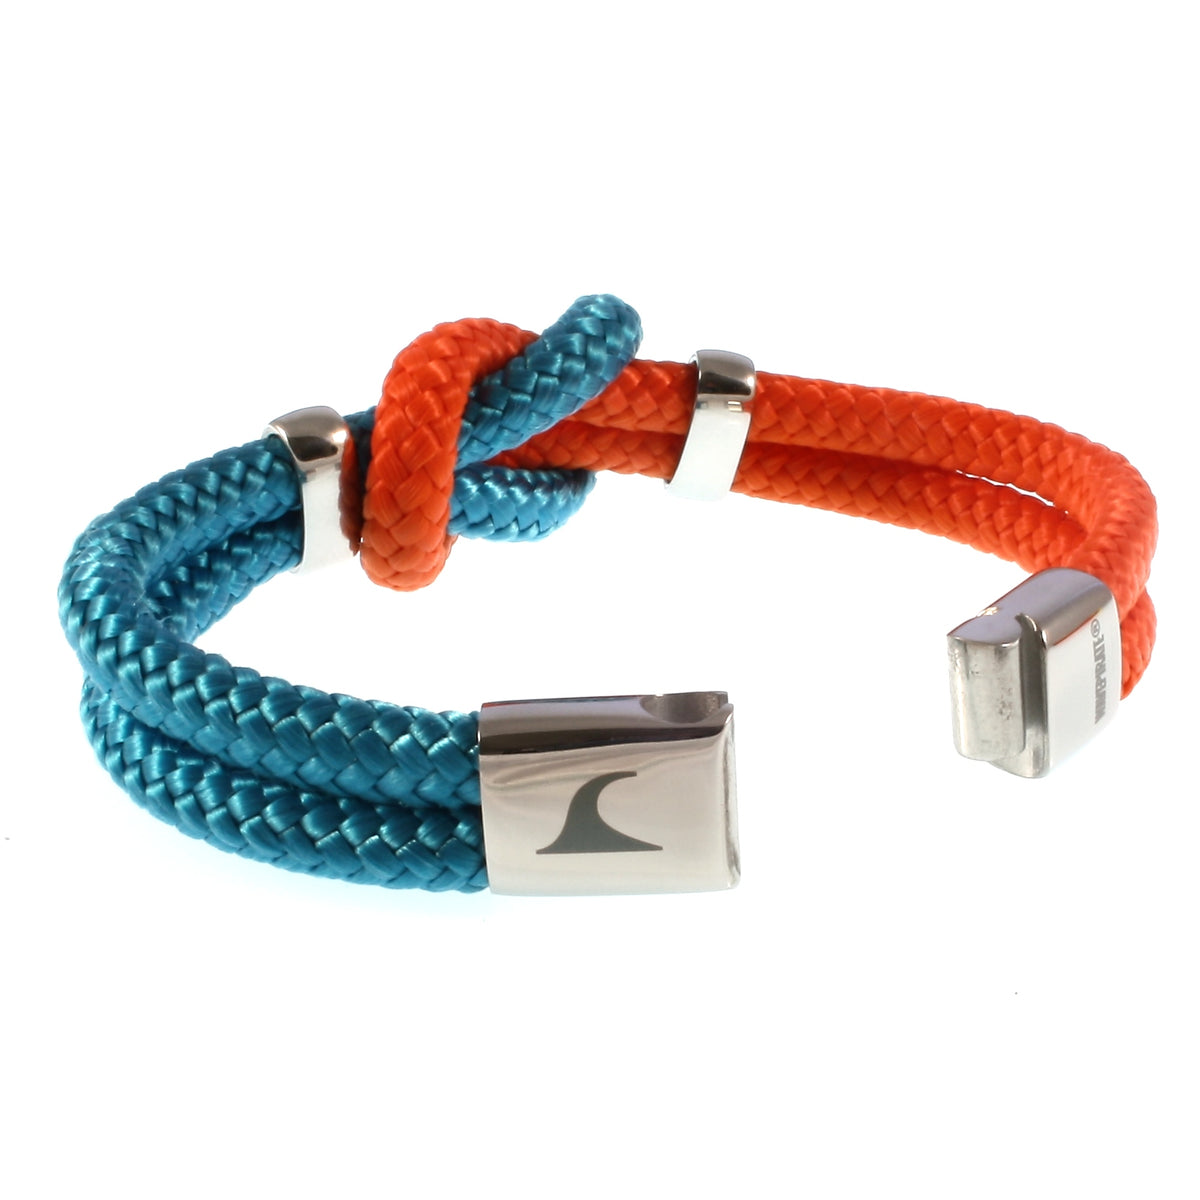 Damen-Segeltau-armband-pure-blau-orange-silber-geflochten-Edelstahlverschluss-offen-wavepirate-shop-st